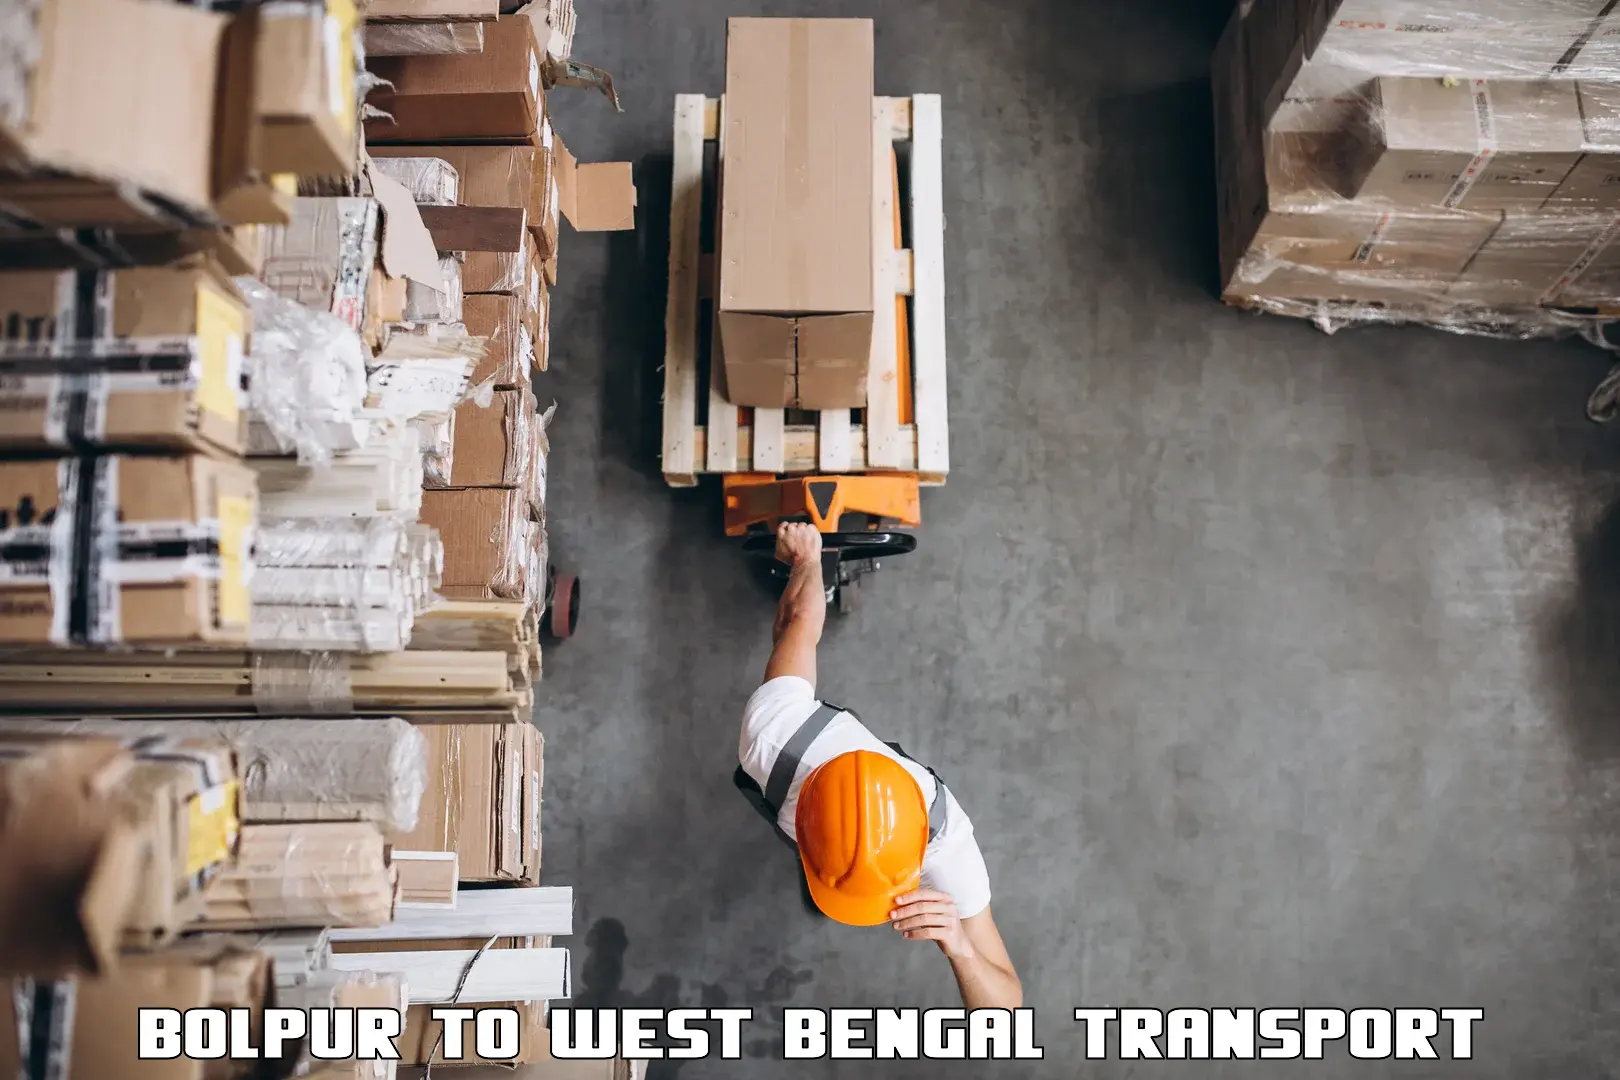 Online transport Bolpur to Kolkata Port